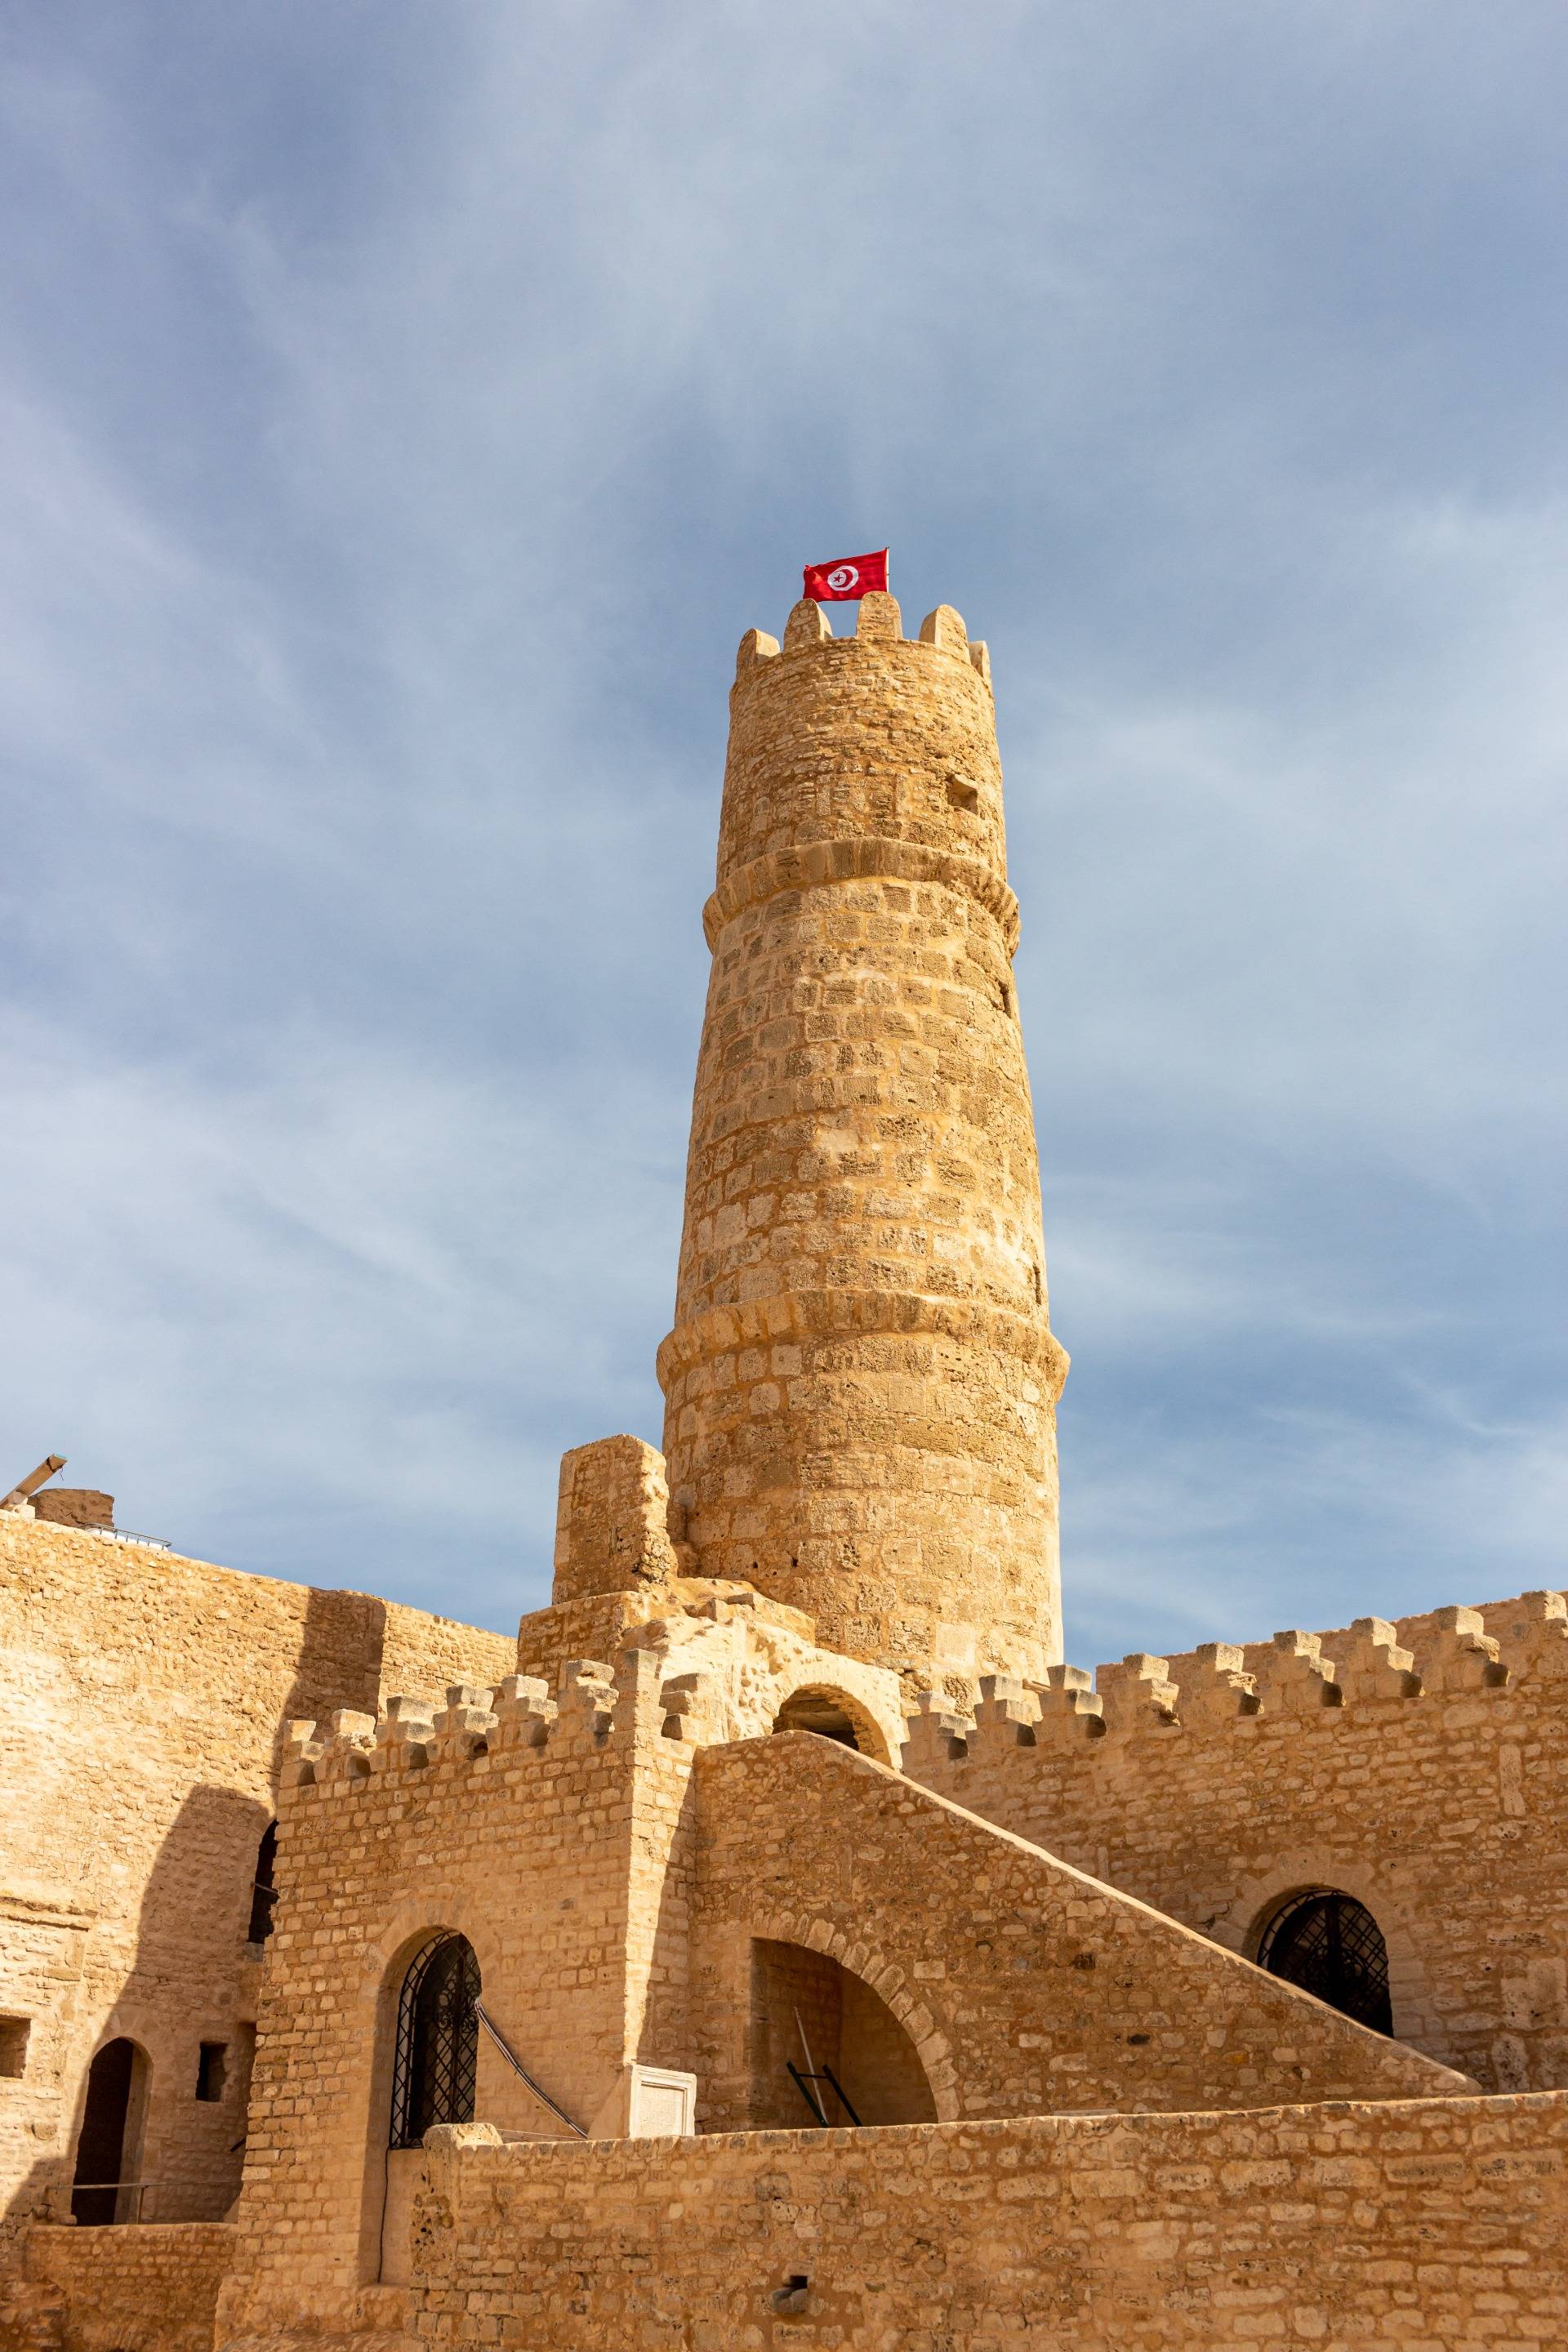 Tunisia - Monastir - In February! Part 1/Tunezja-Monastyr-w Lutym! Część 1